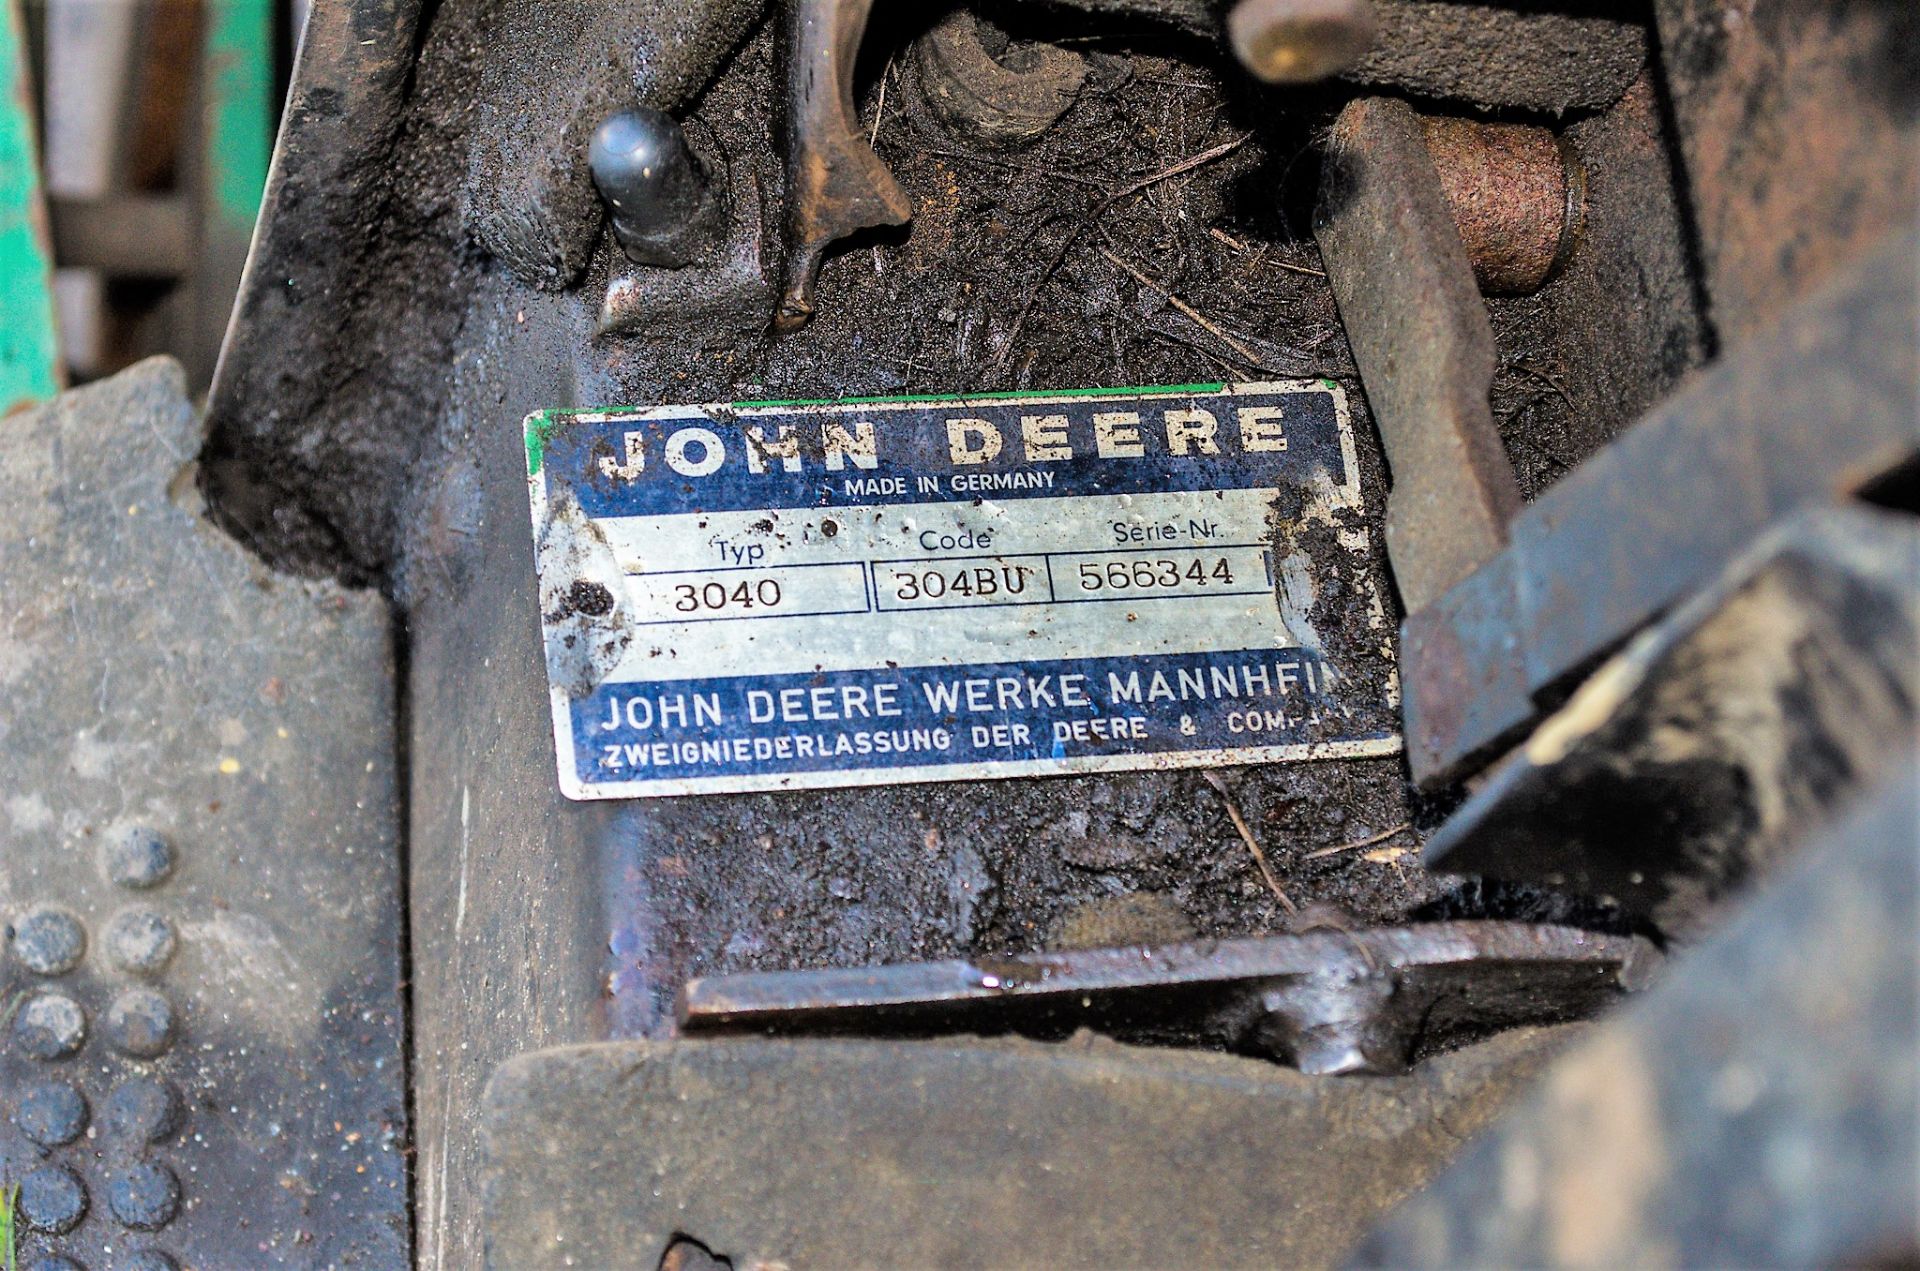 John Deere 3040 4wd diesel tractor - Image 25 of 25